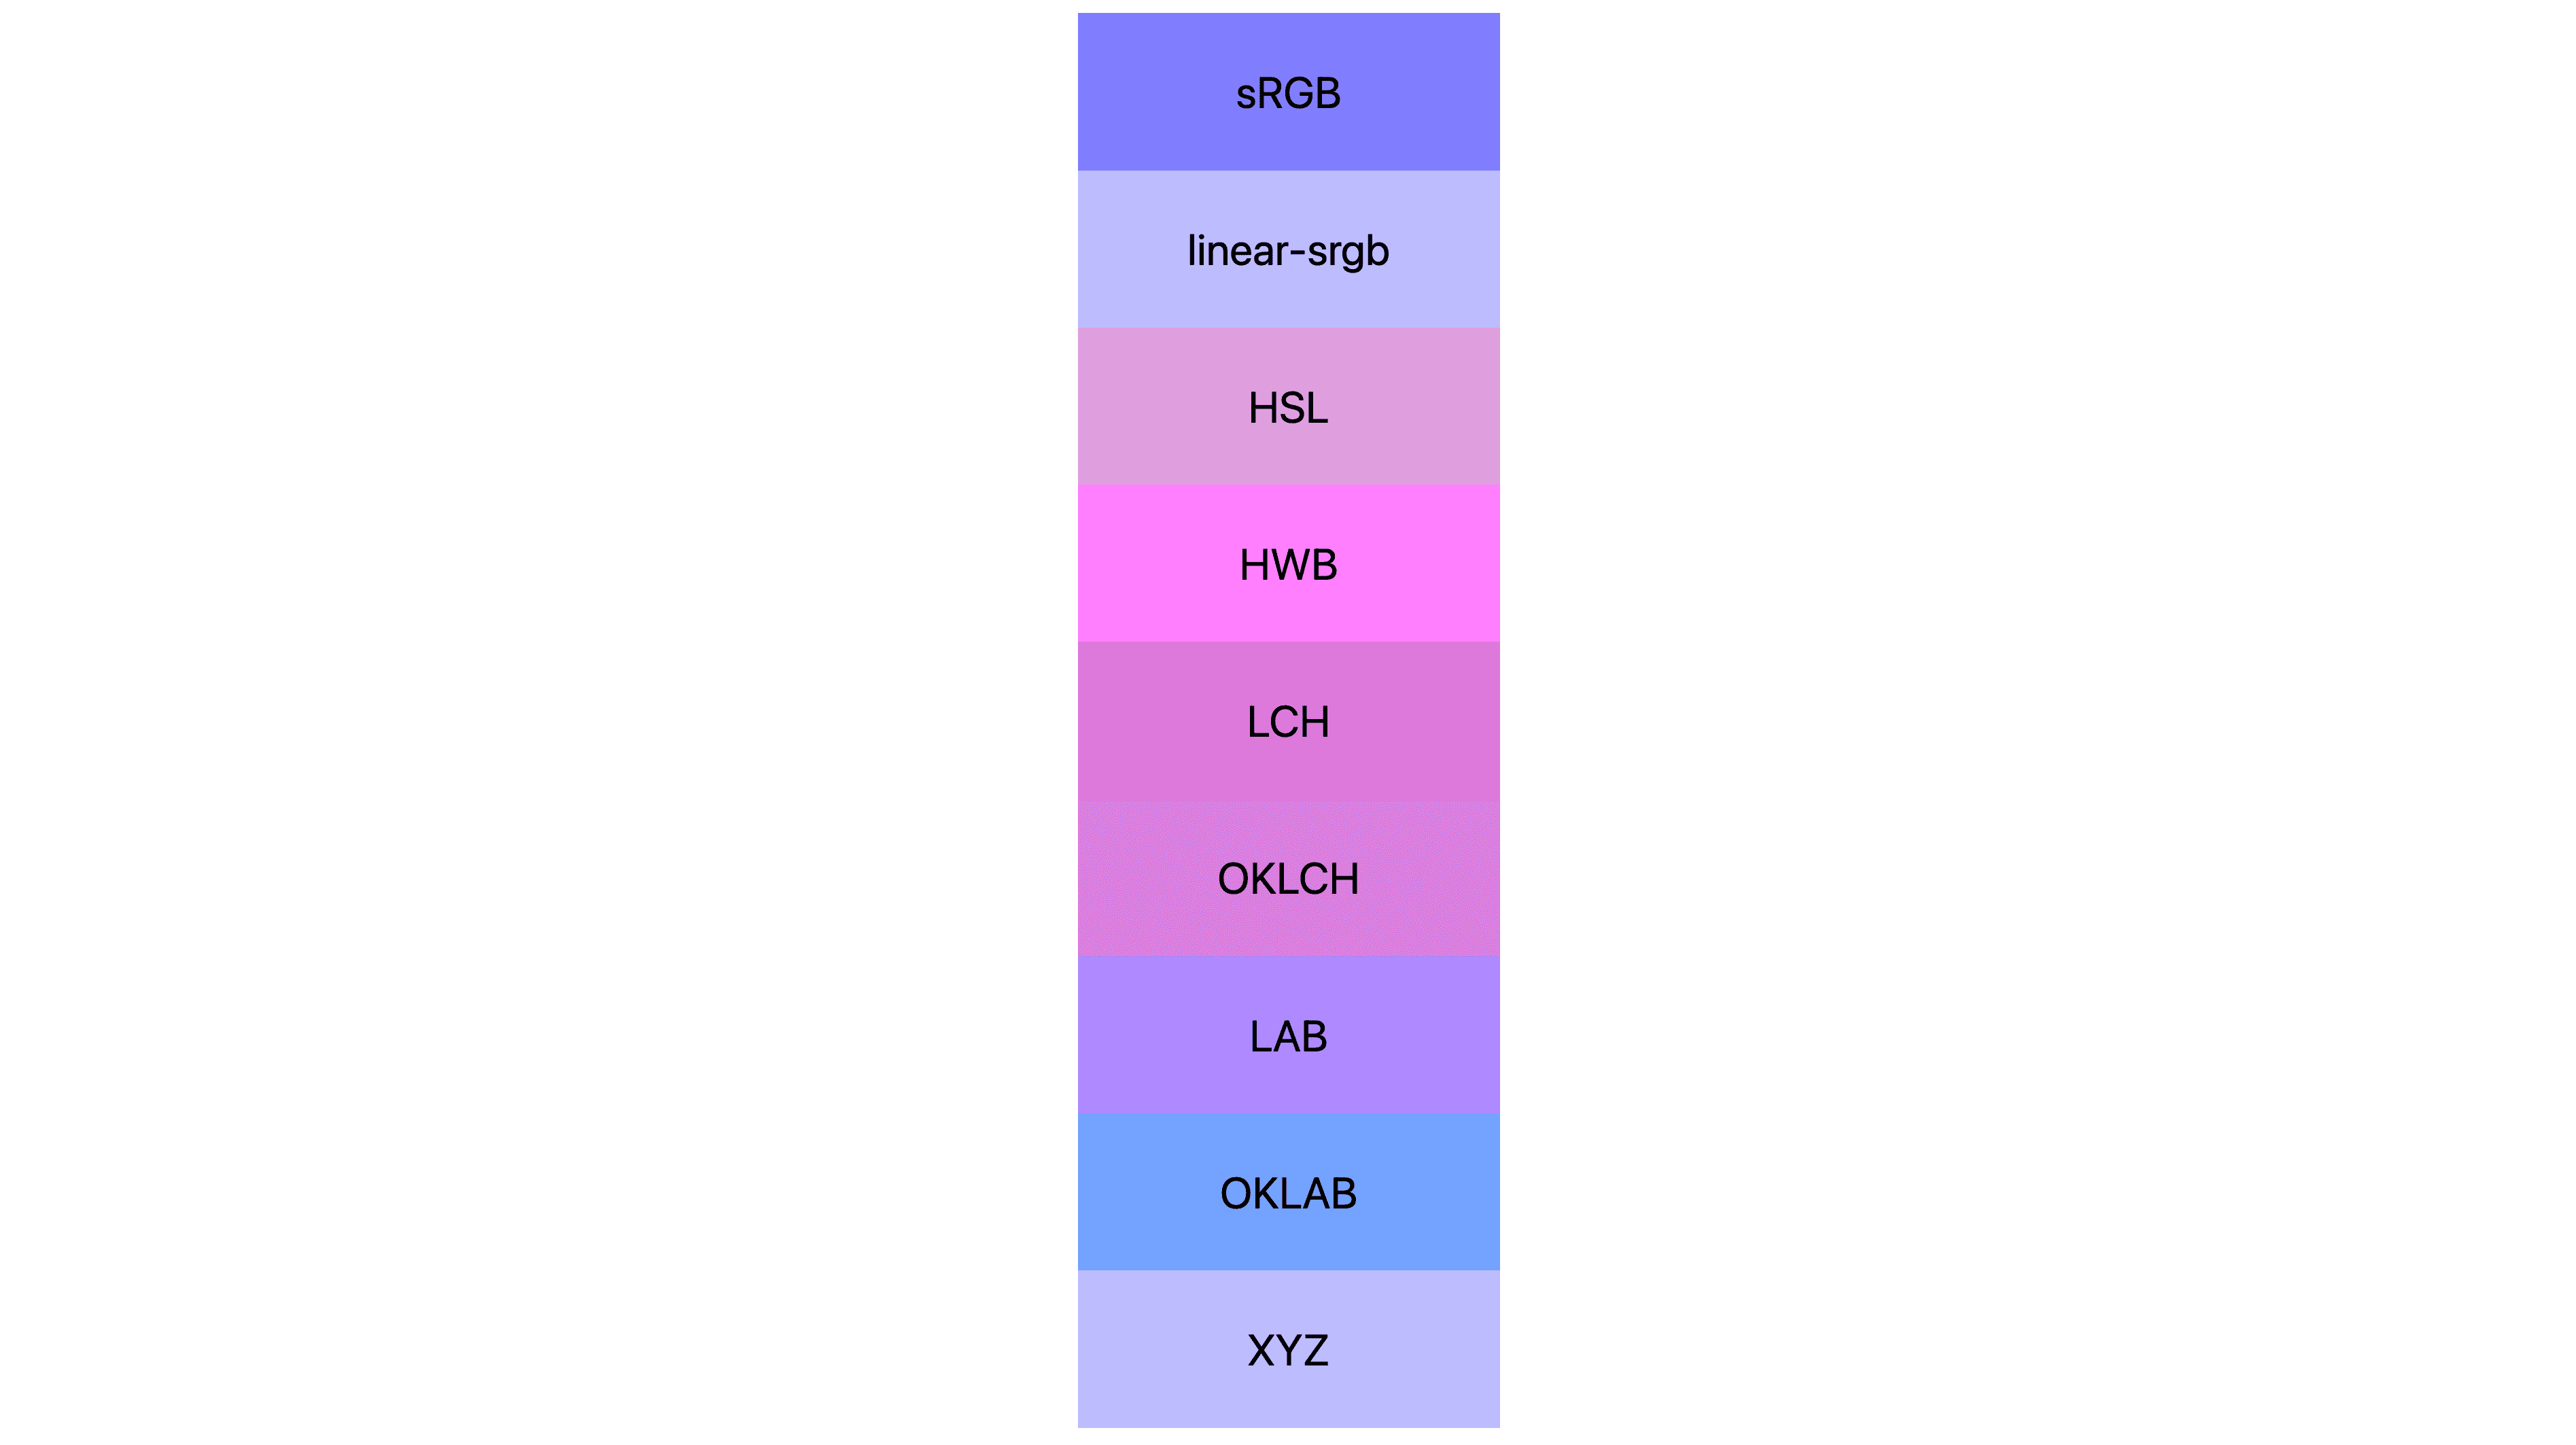 7 Farbbereiche (srgb, linear-srgb, lch, oklch, Lab, Oklab, xyz), jeweils mit unterschiedlichen Ergebnissen. Viele sind rosa oder lila, aber nur wenige sind tatsächlich noch blau.